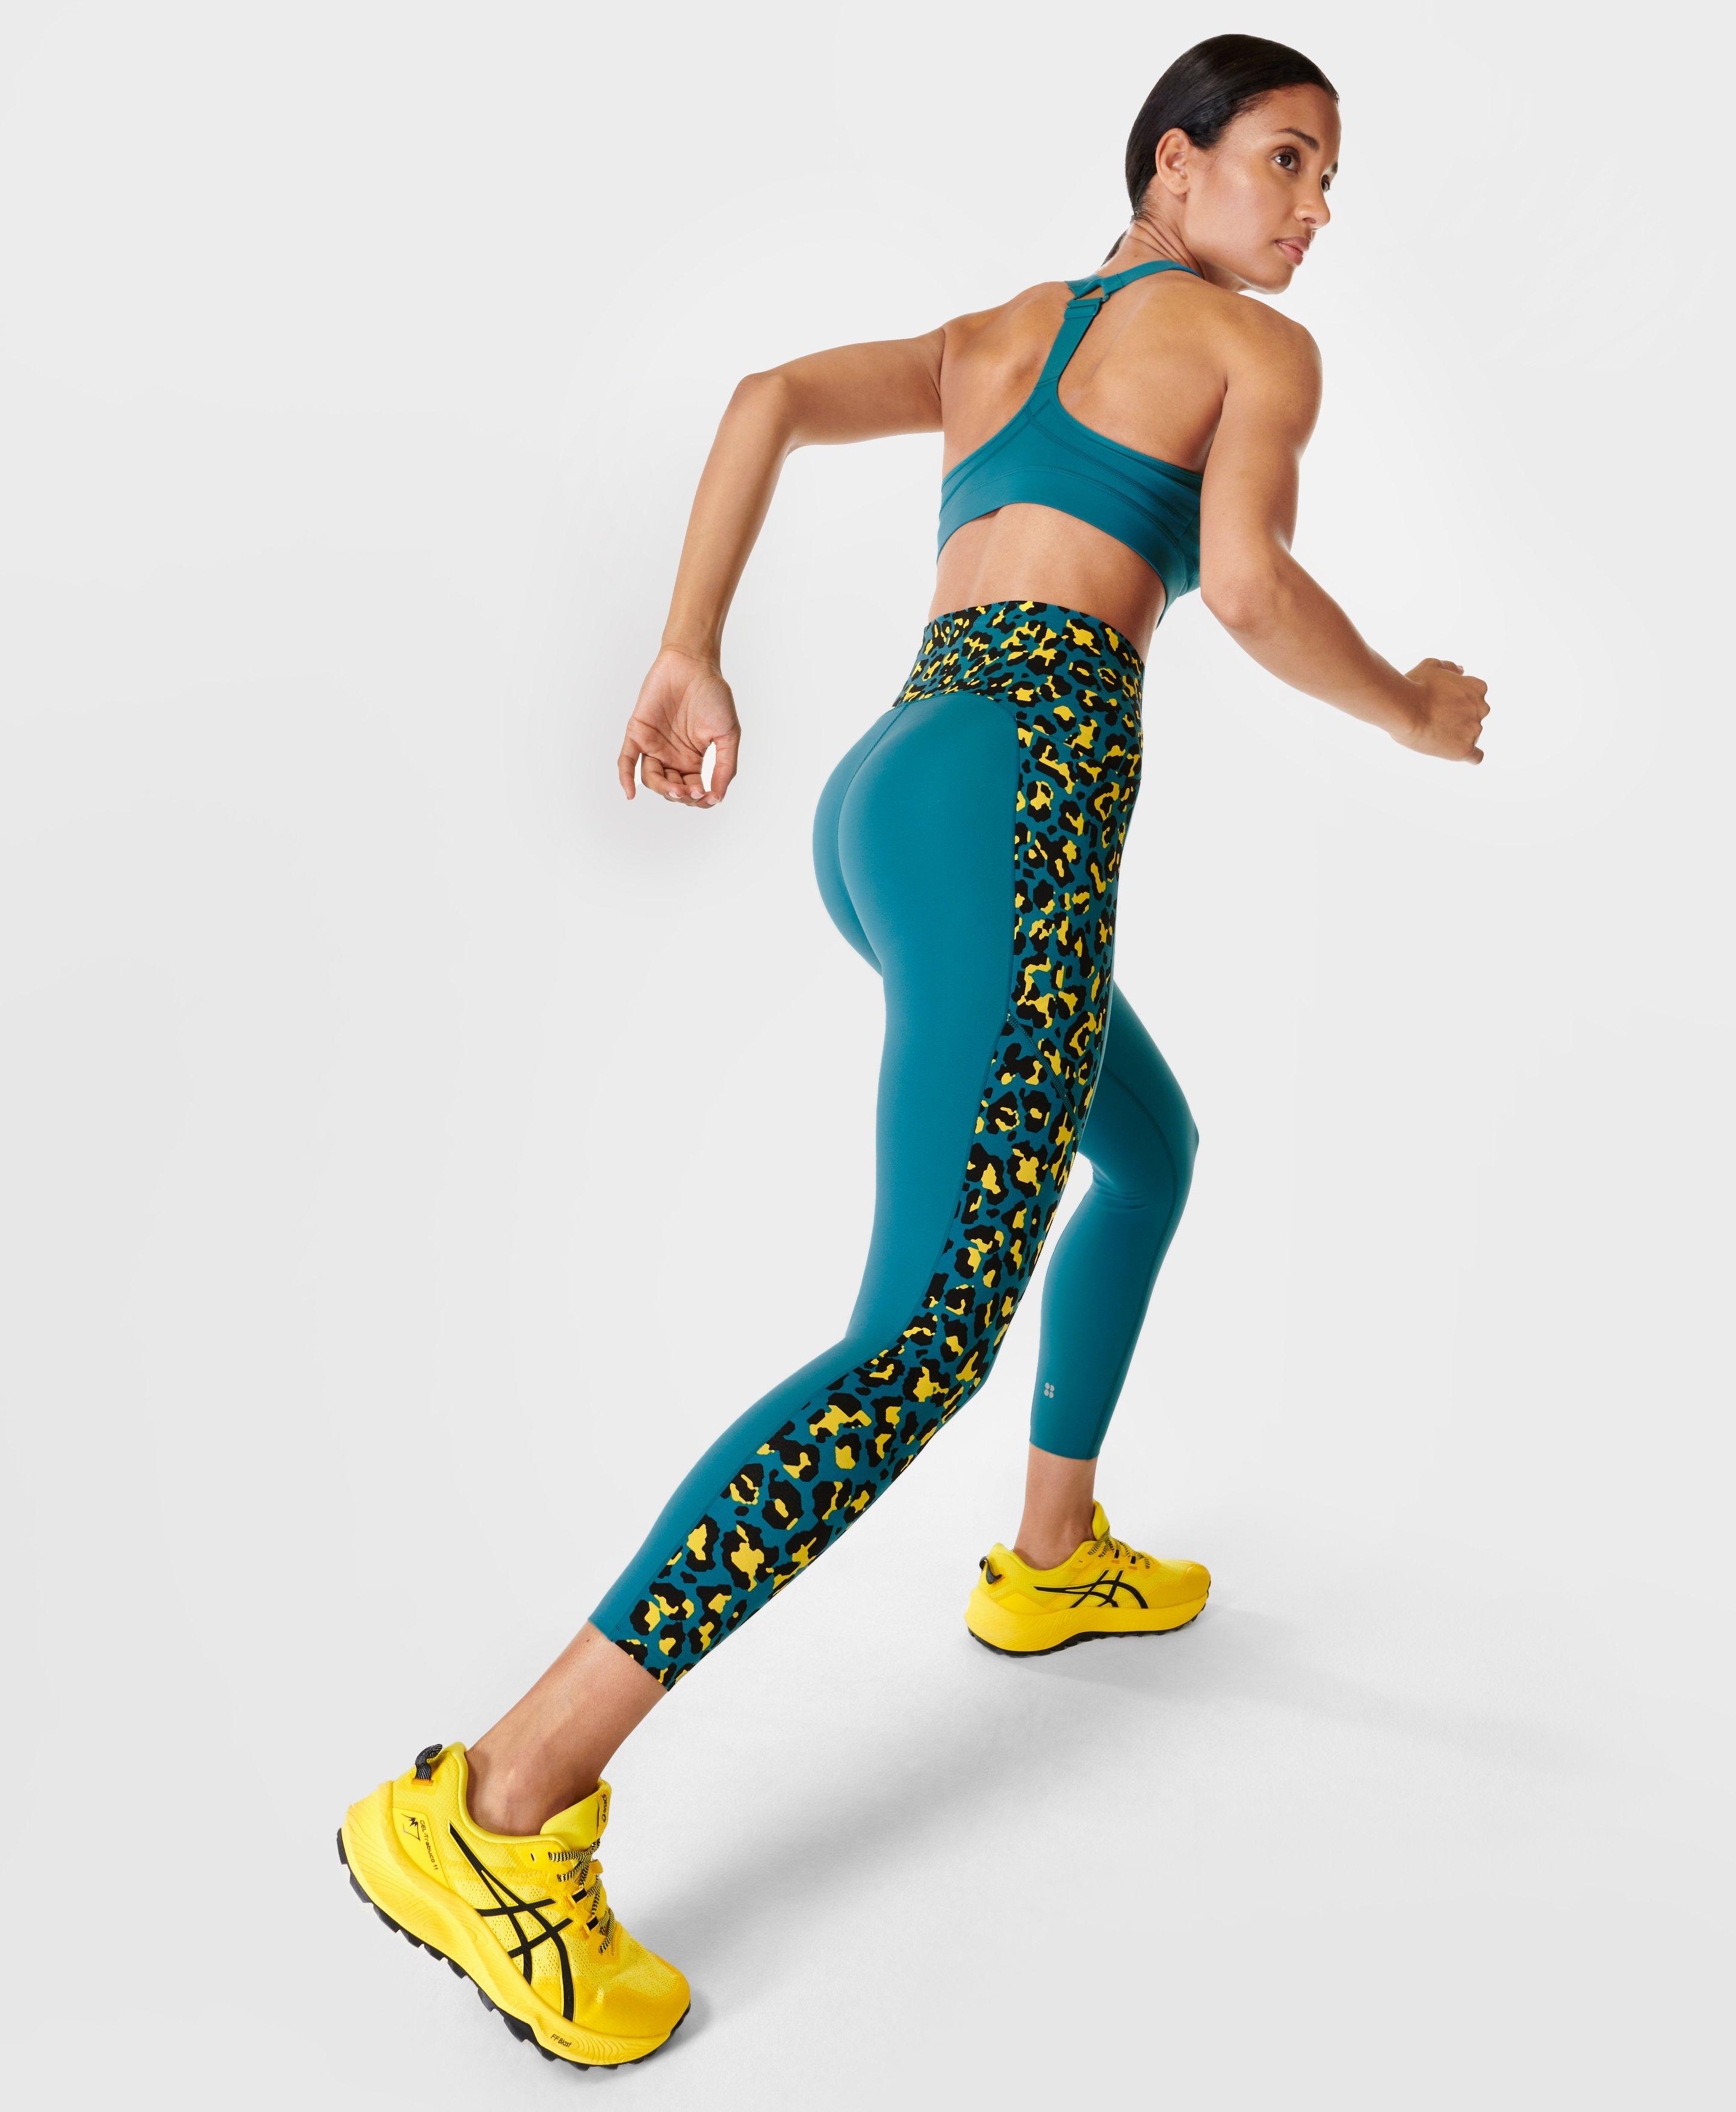 Power UltraSculpt High Waist Workout Leggings Colour Block - Blue Pixel  Leopard Print, Women's Leggings